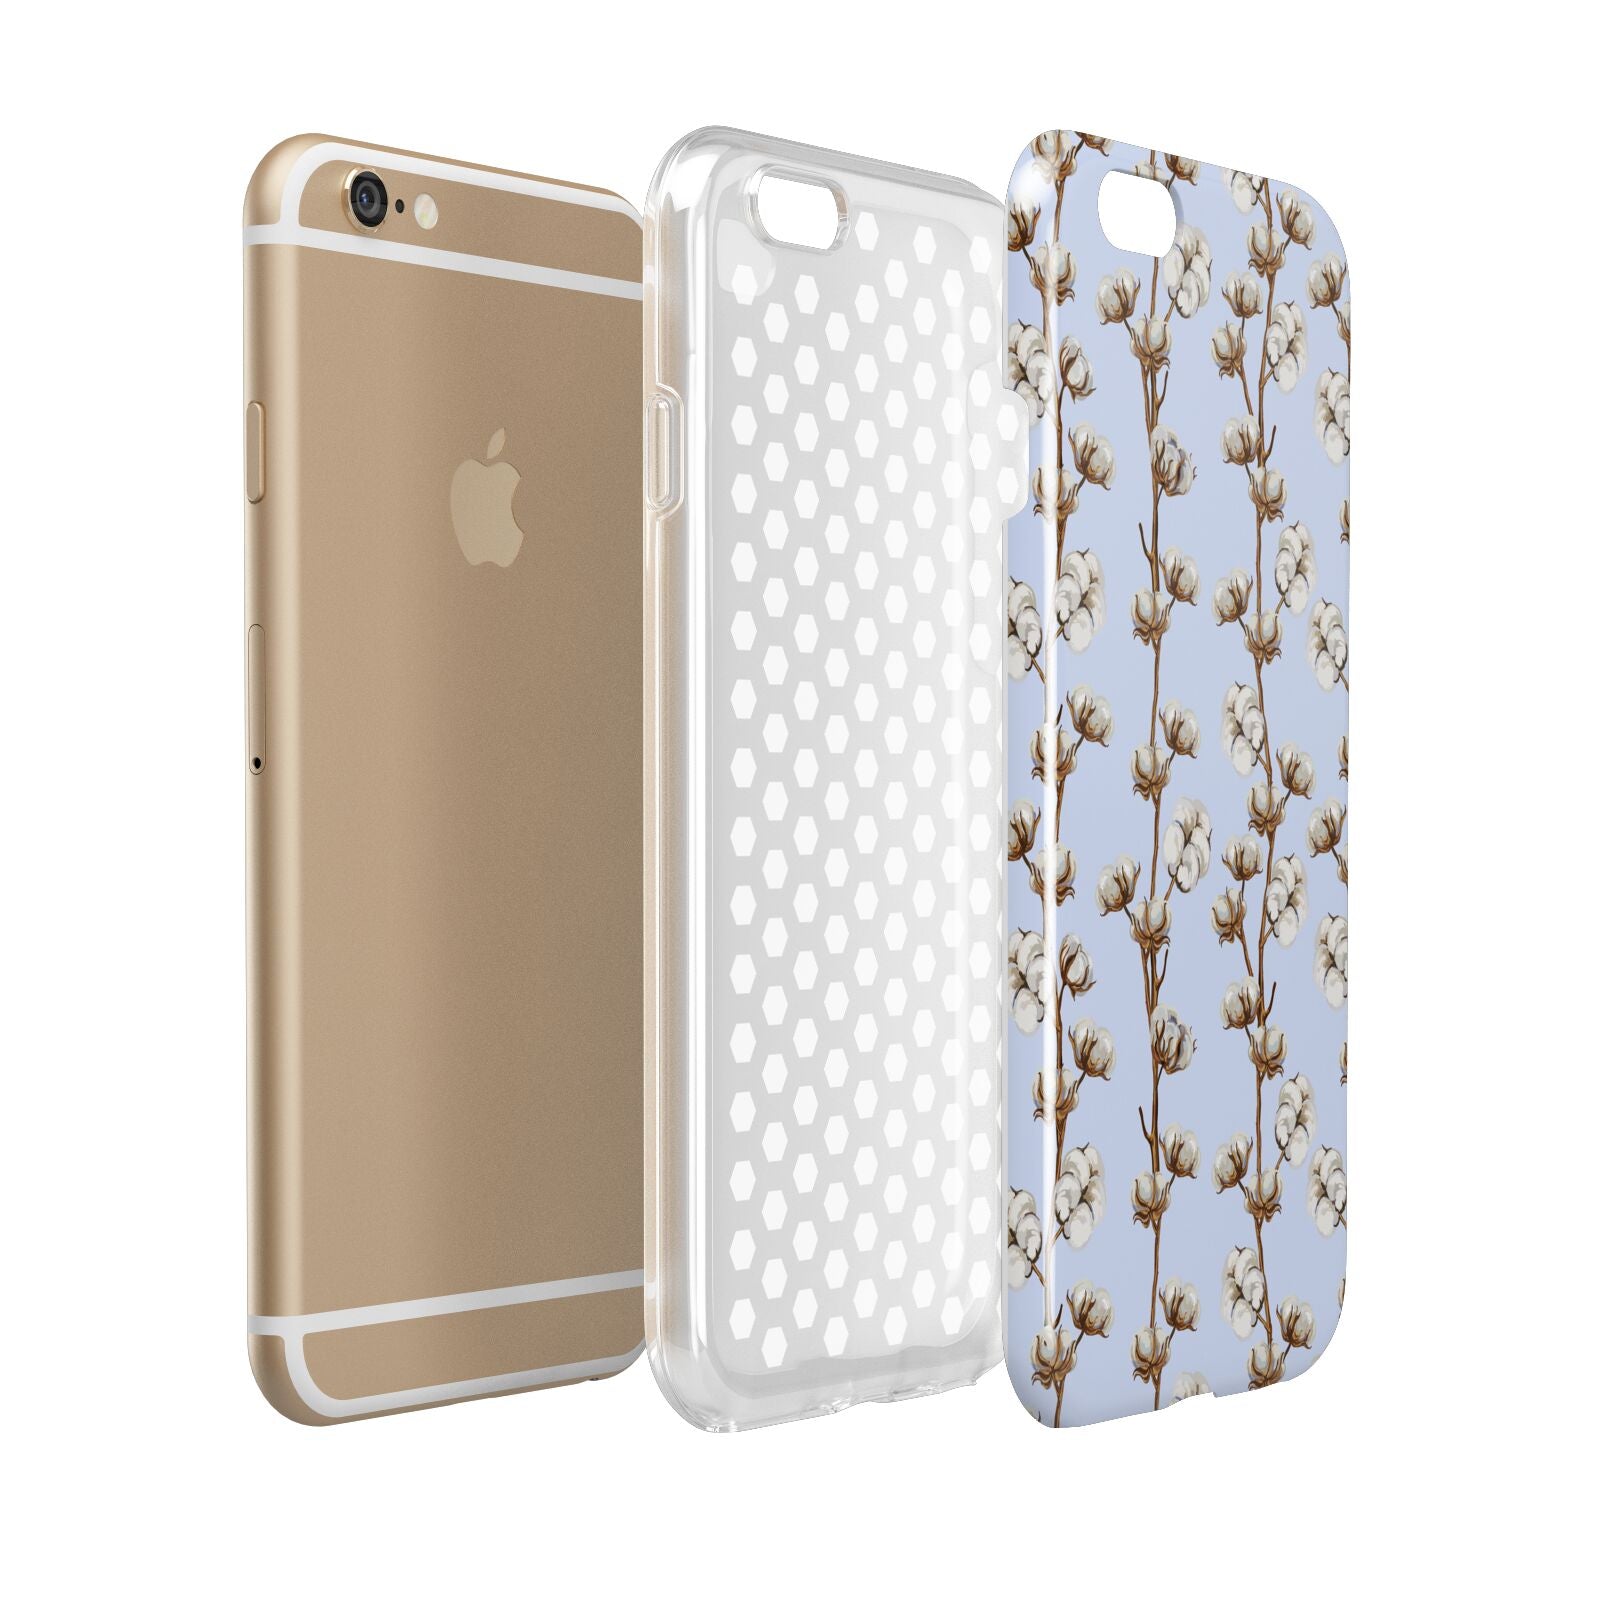 Cotton Branch Apple iPhone 6 3D Tough Case Expanded view